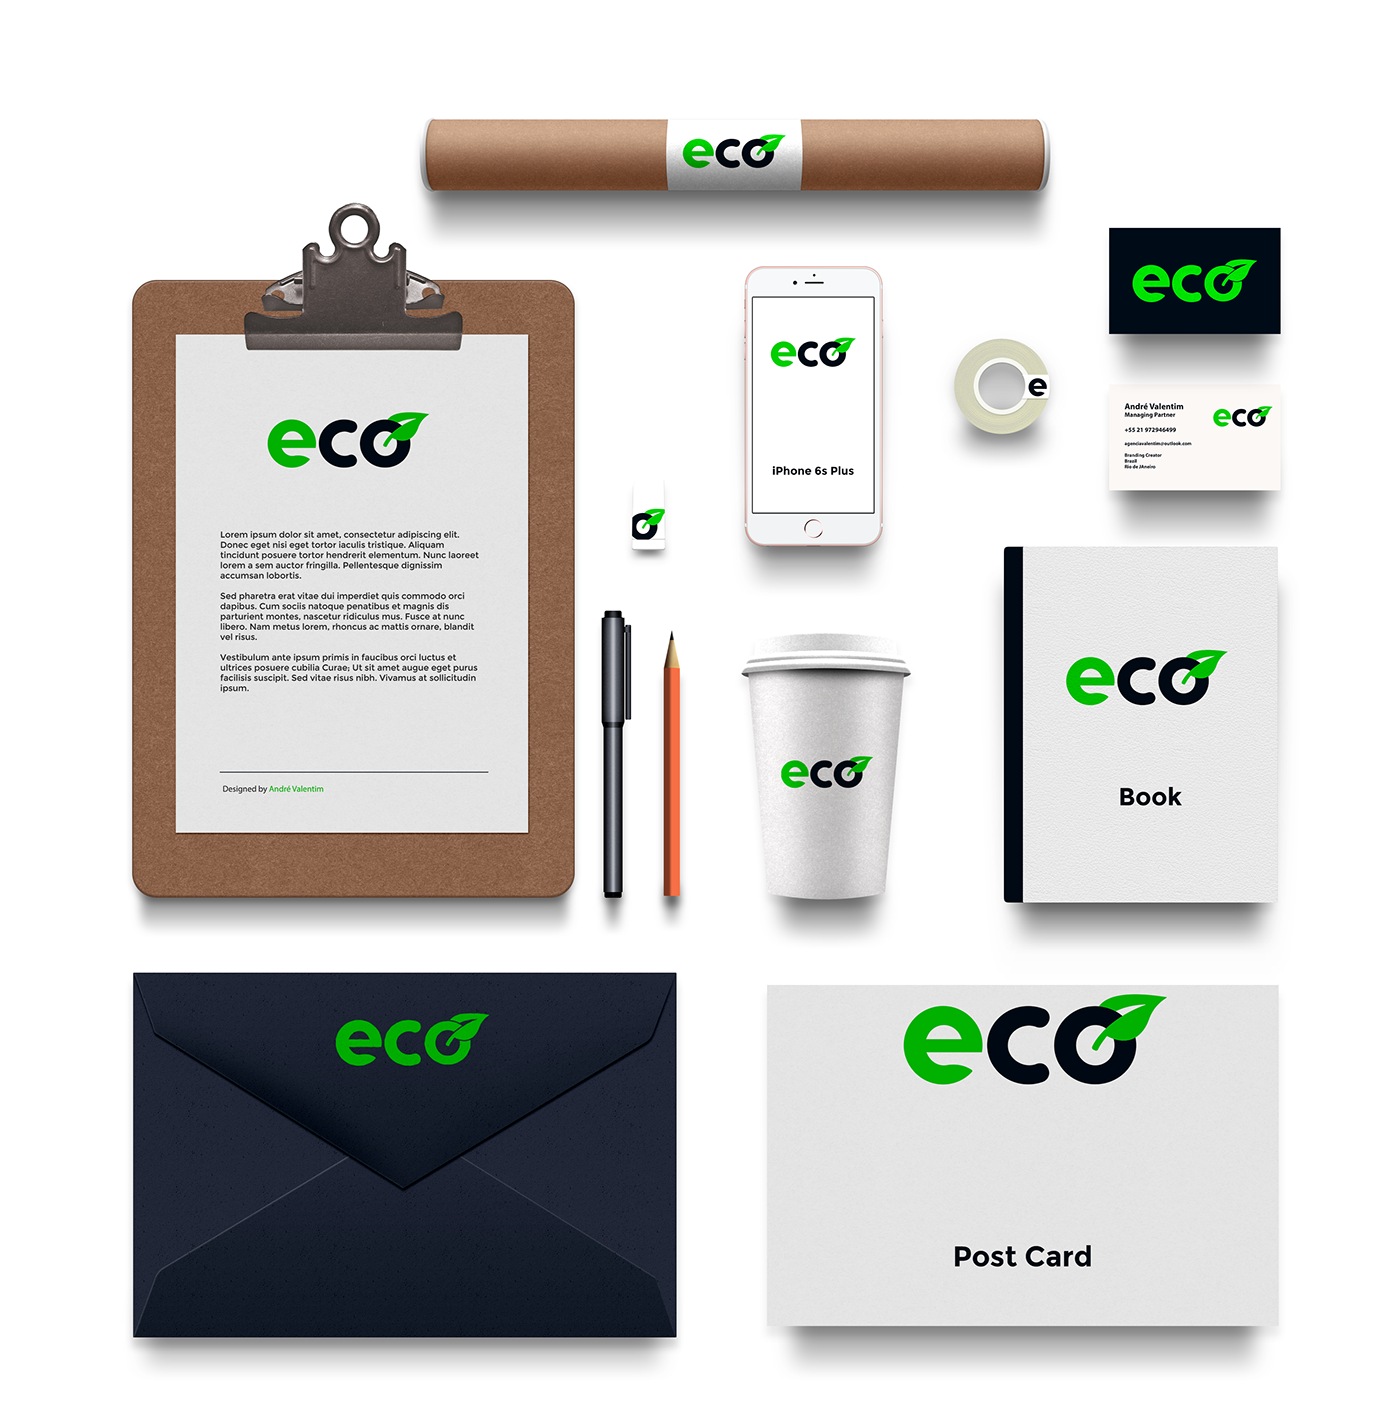 eco brand logo marca criação photoshop ecologic inspiration download andrevalentim